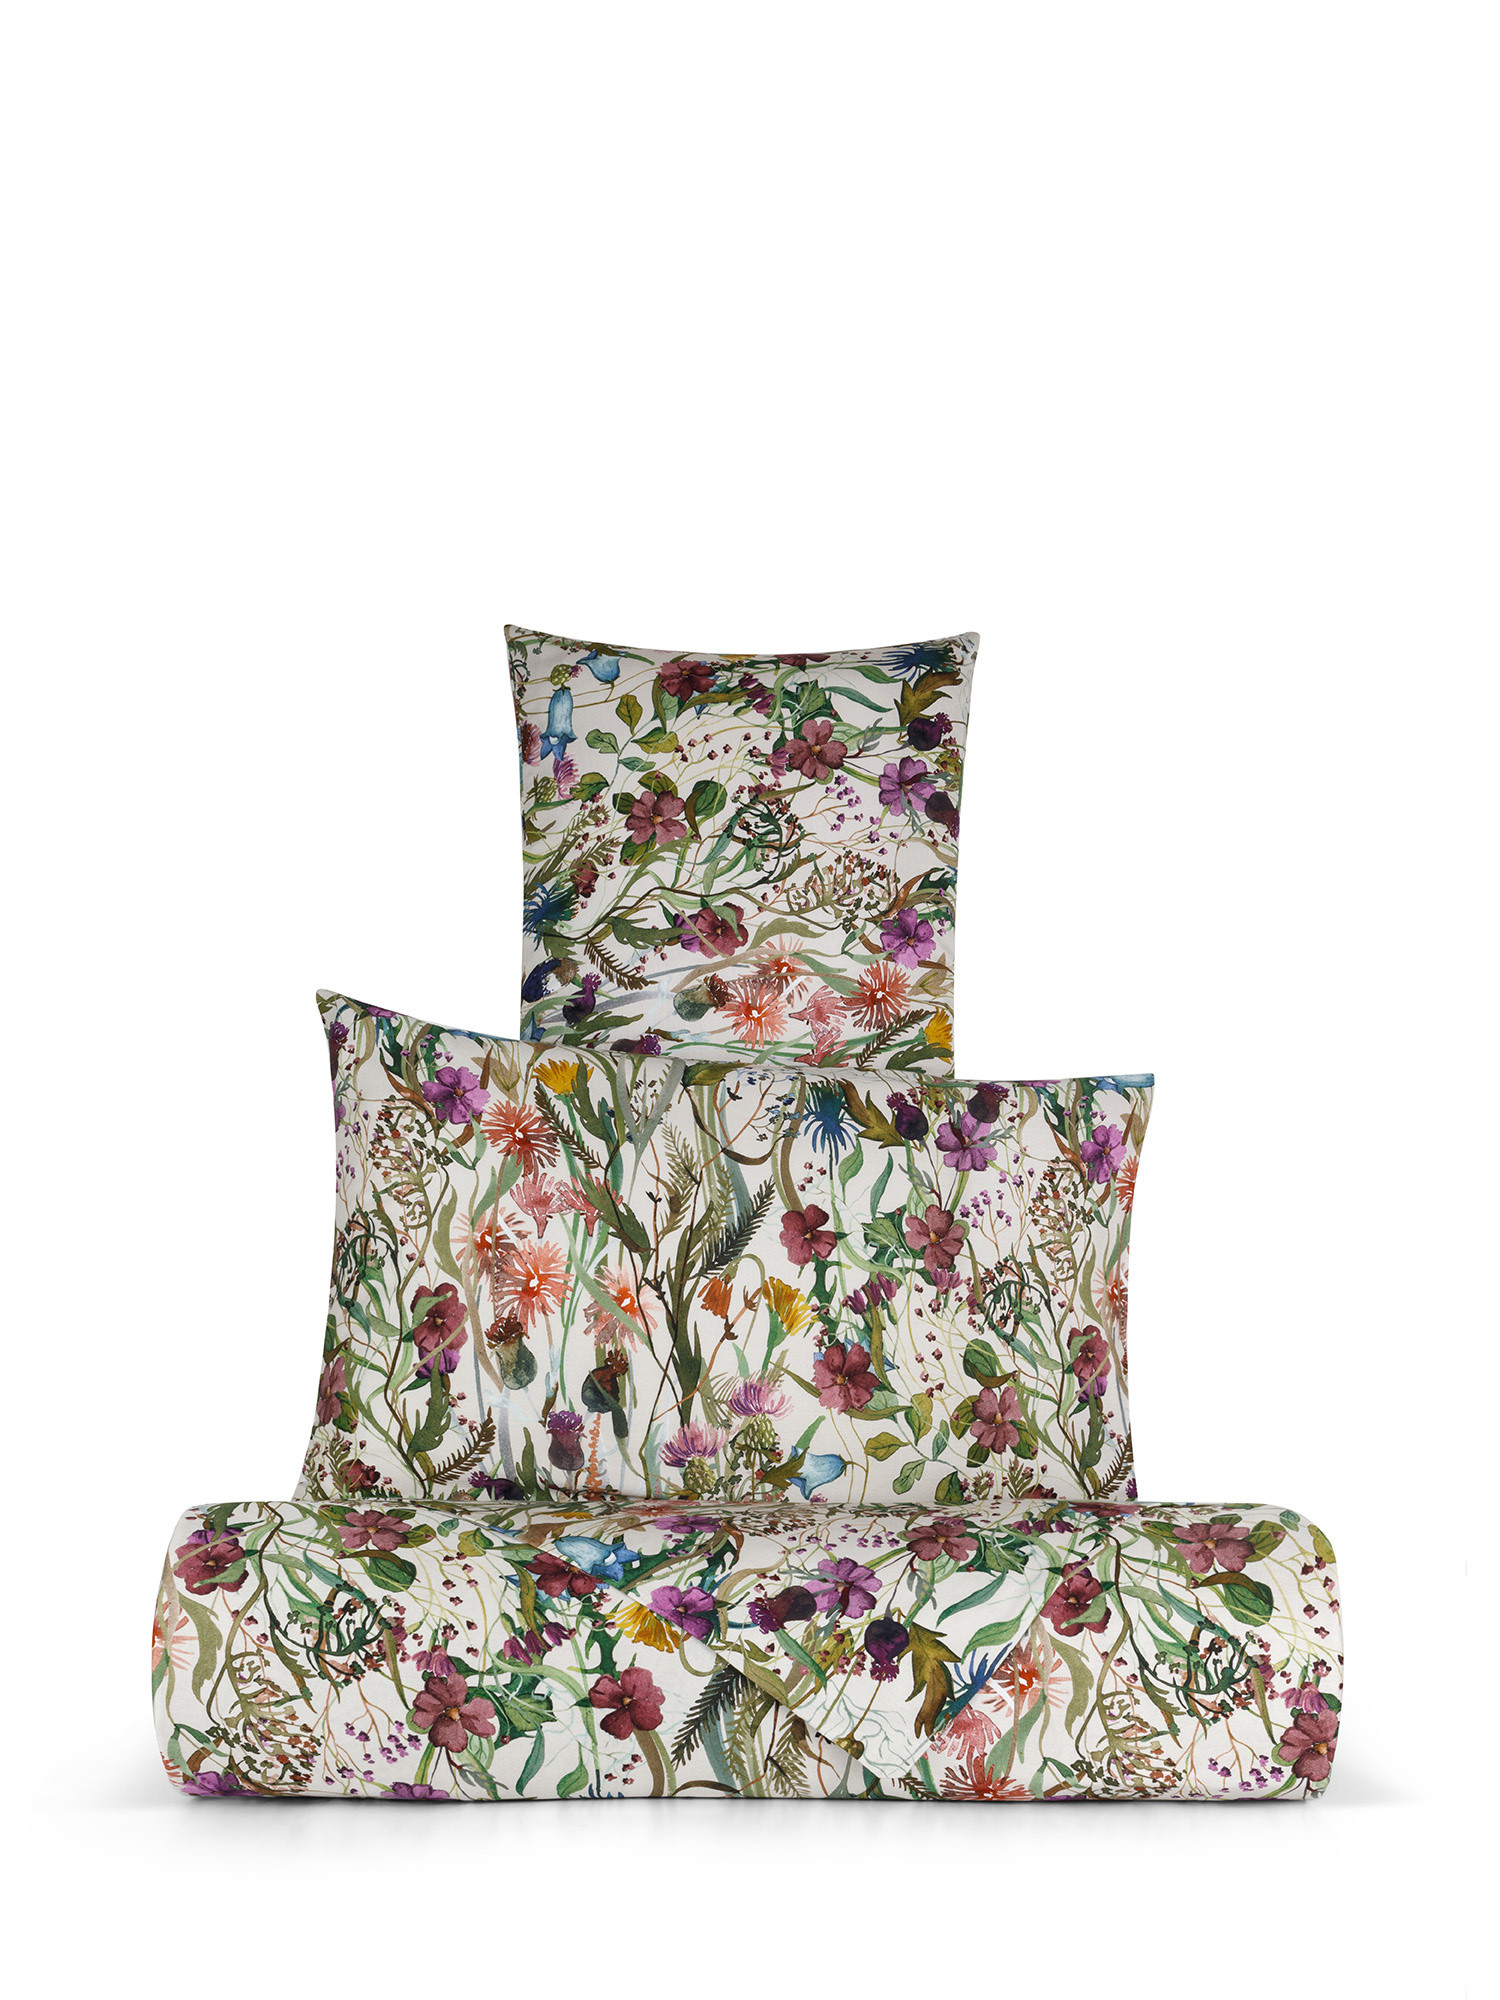 Floral patterned cotton satin sheet set, Multicolor, large image number 0